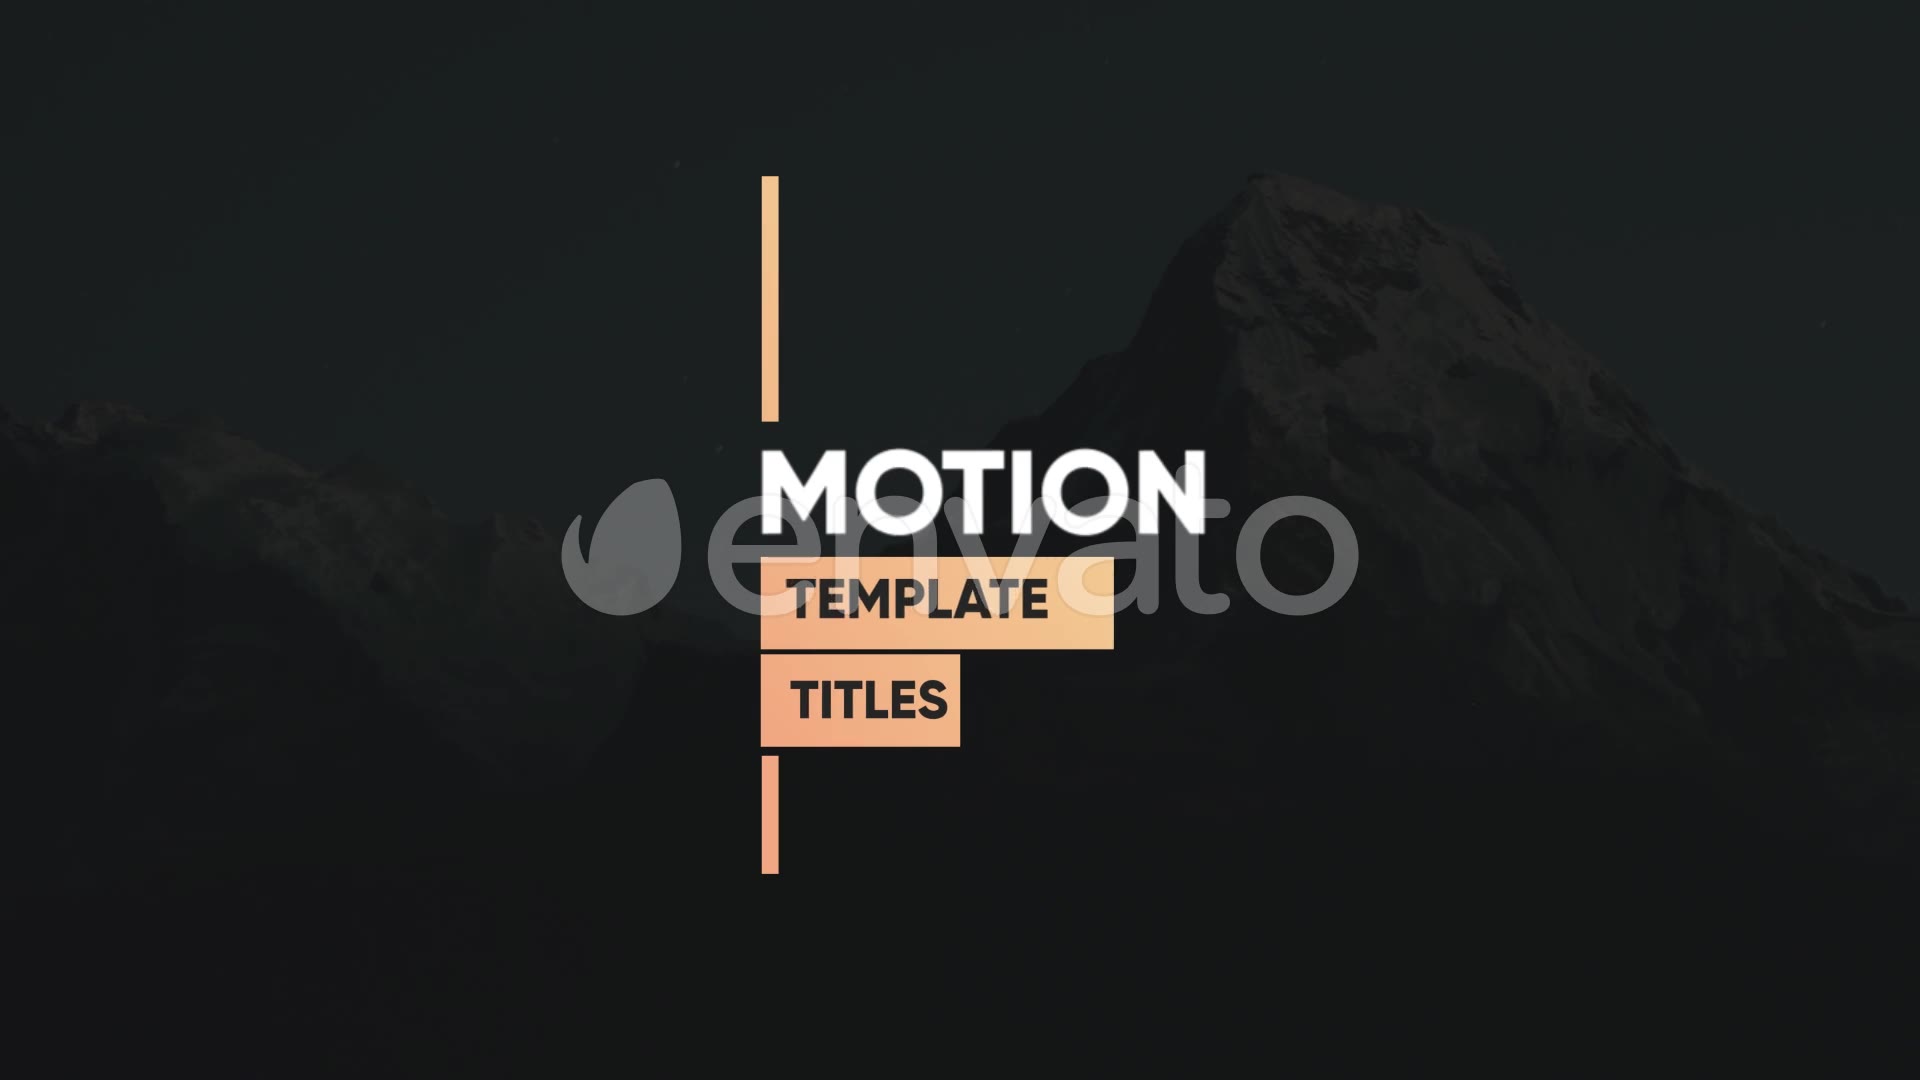 Clean Motion Titles Premiere Pro Videohive 26342522 Premiere Pro Image 4